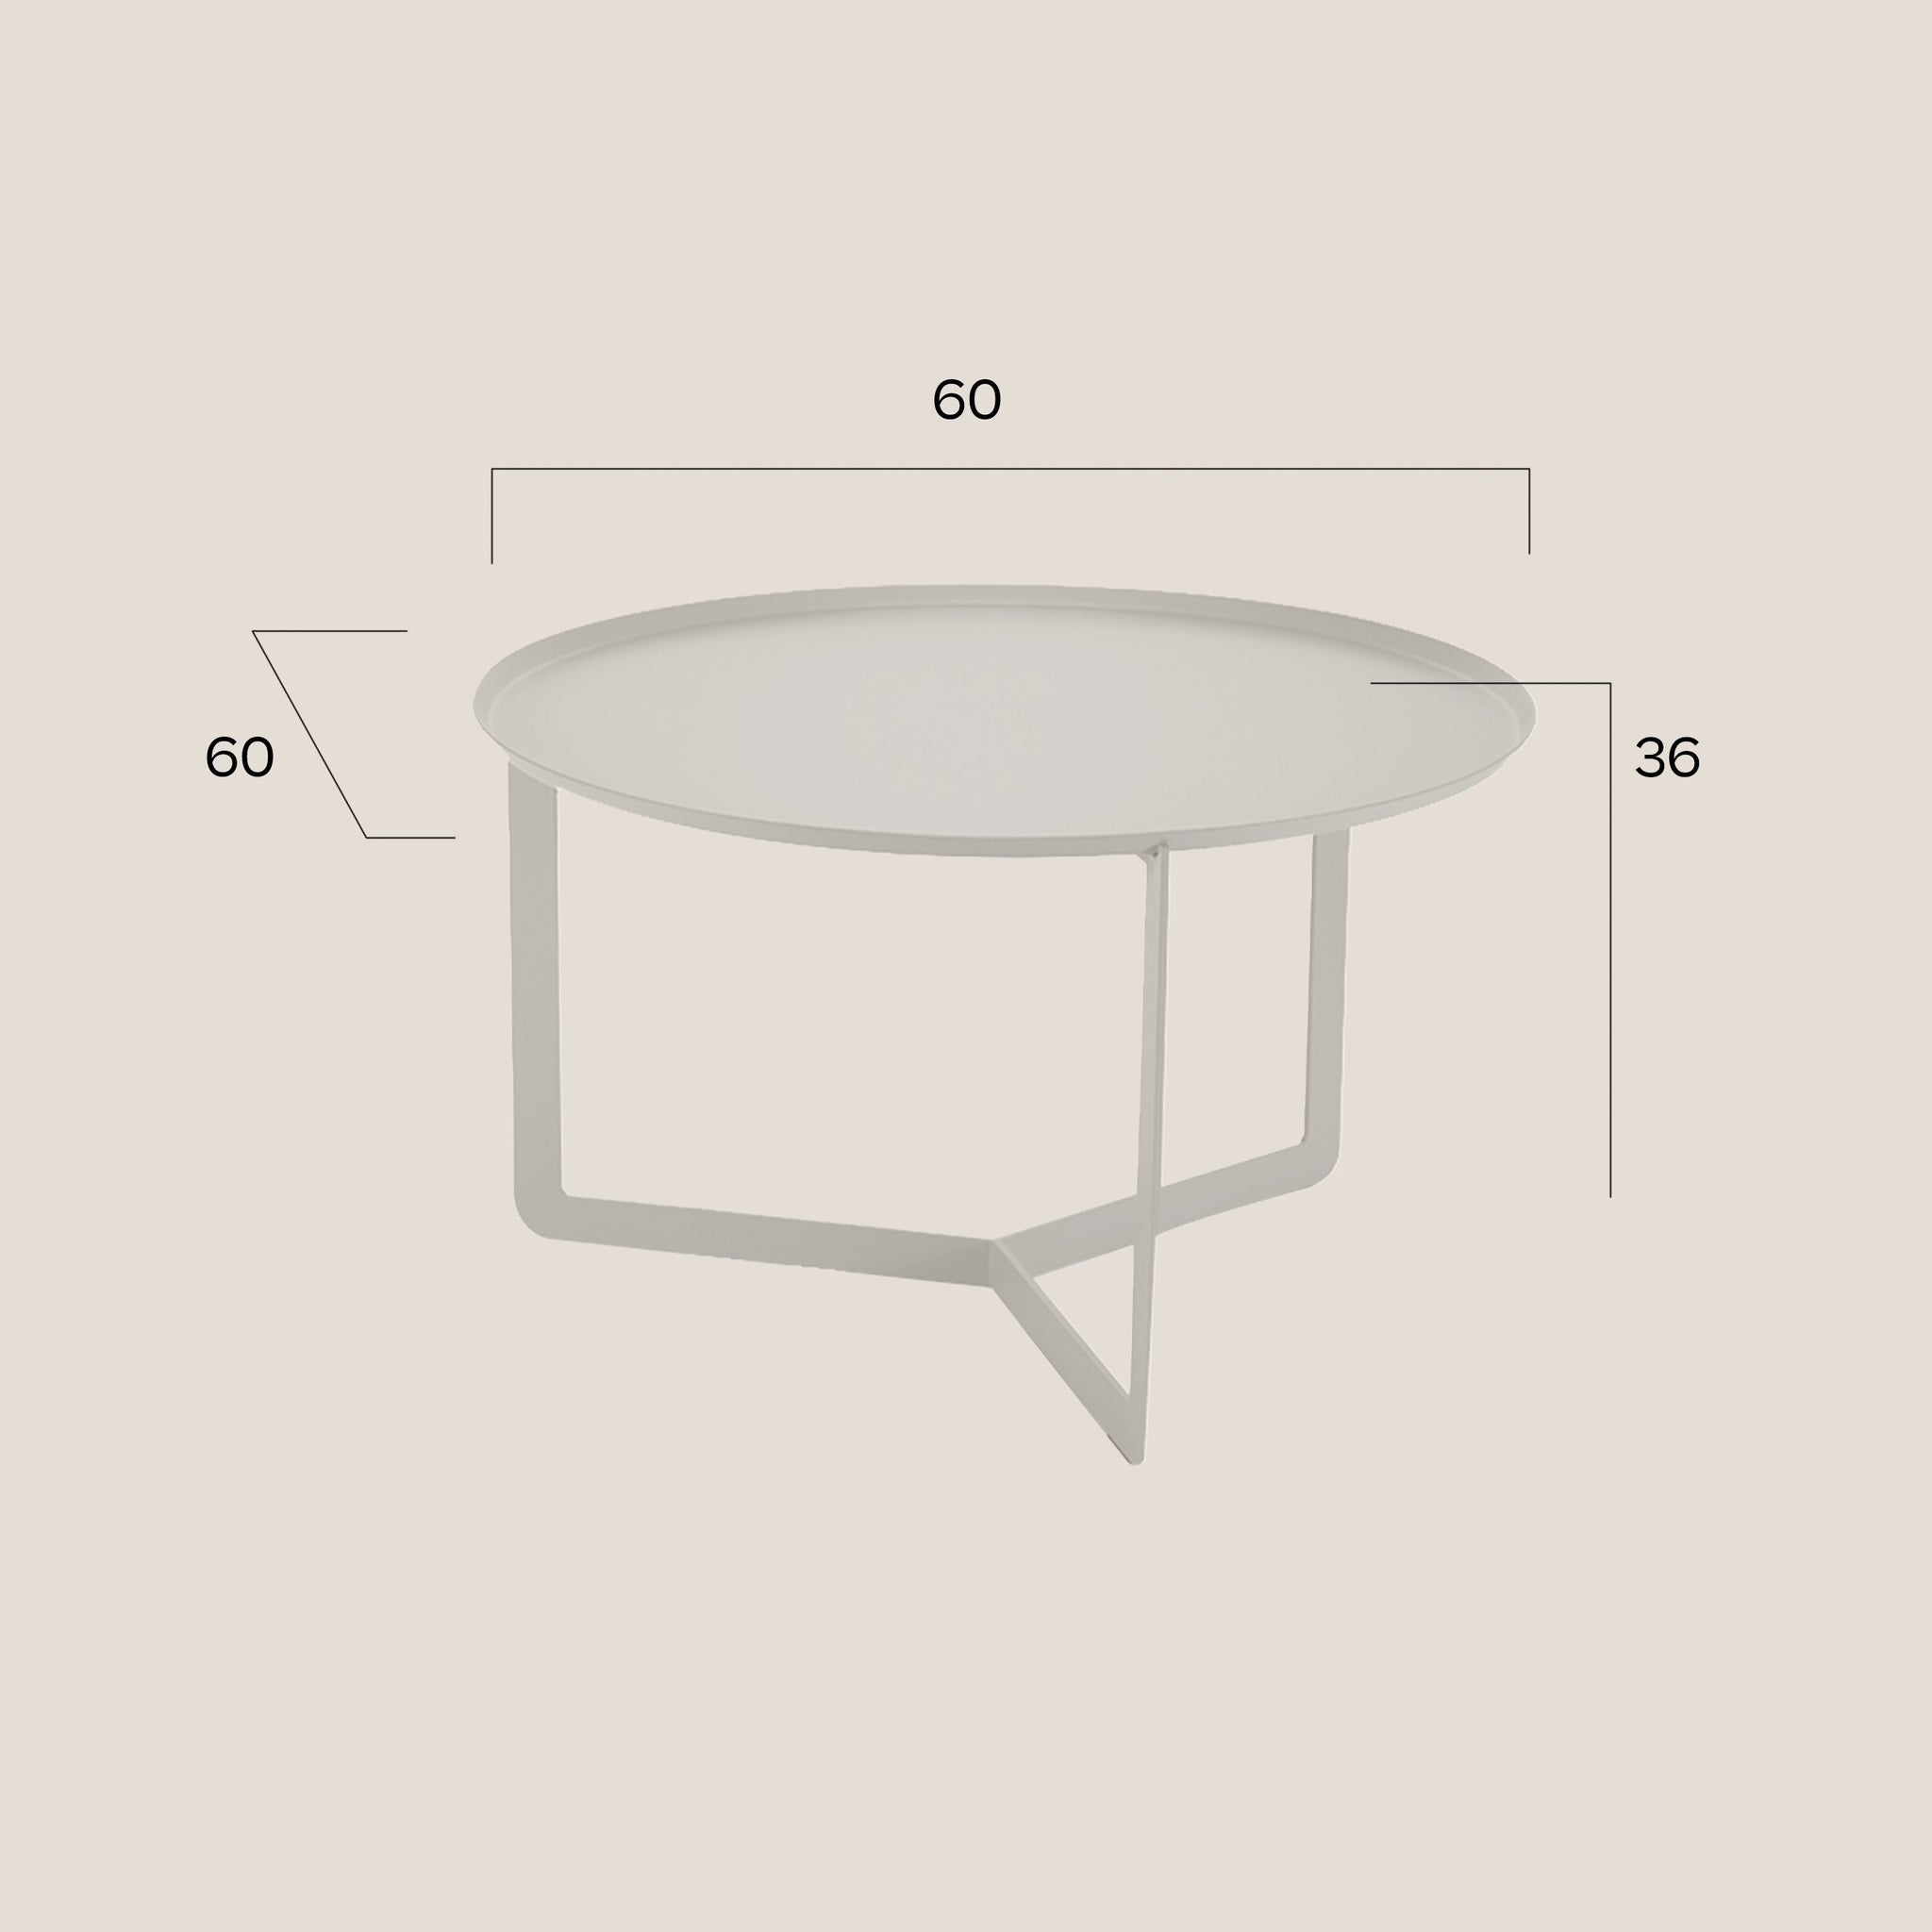 Round Table basse ronde en 3 dimensions en or métallisé